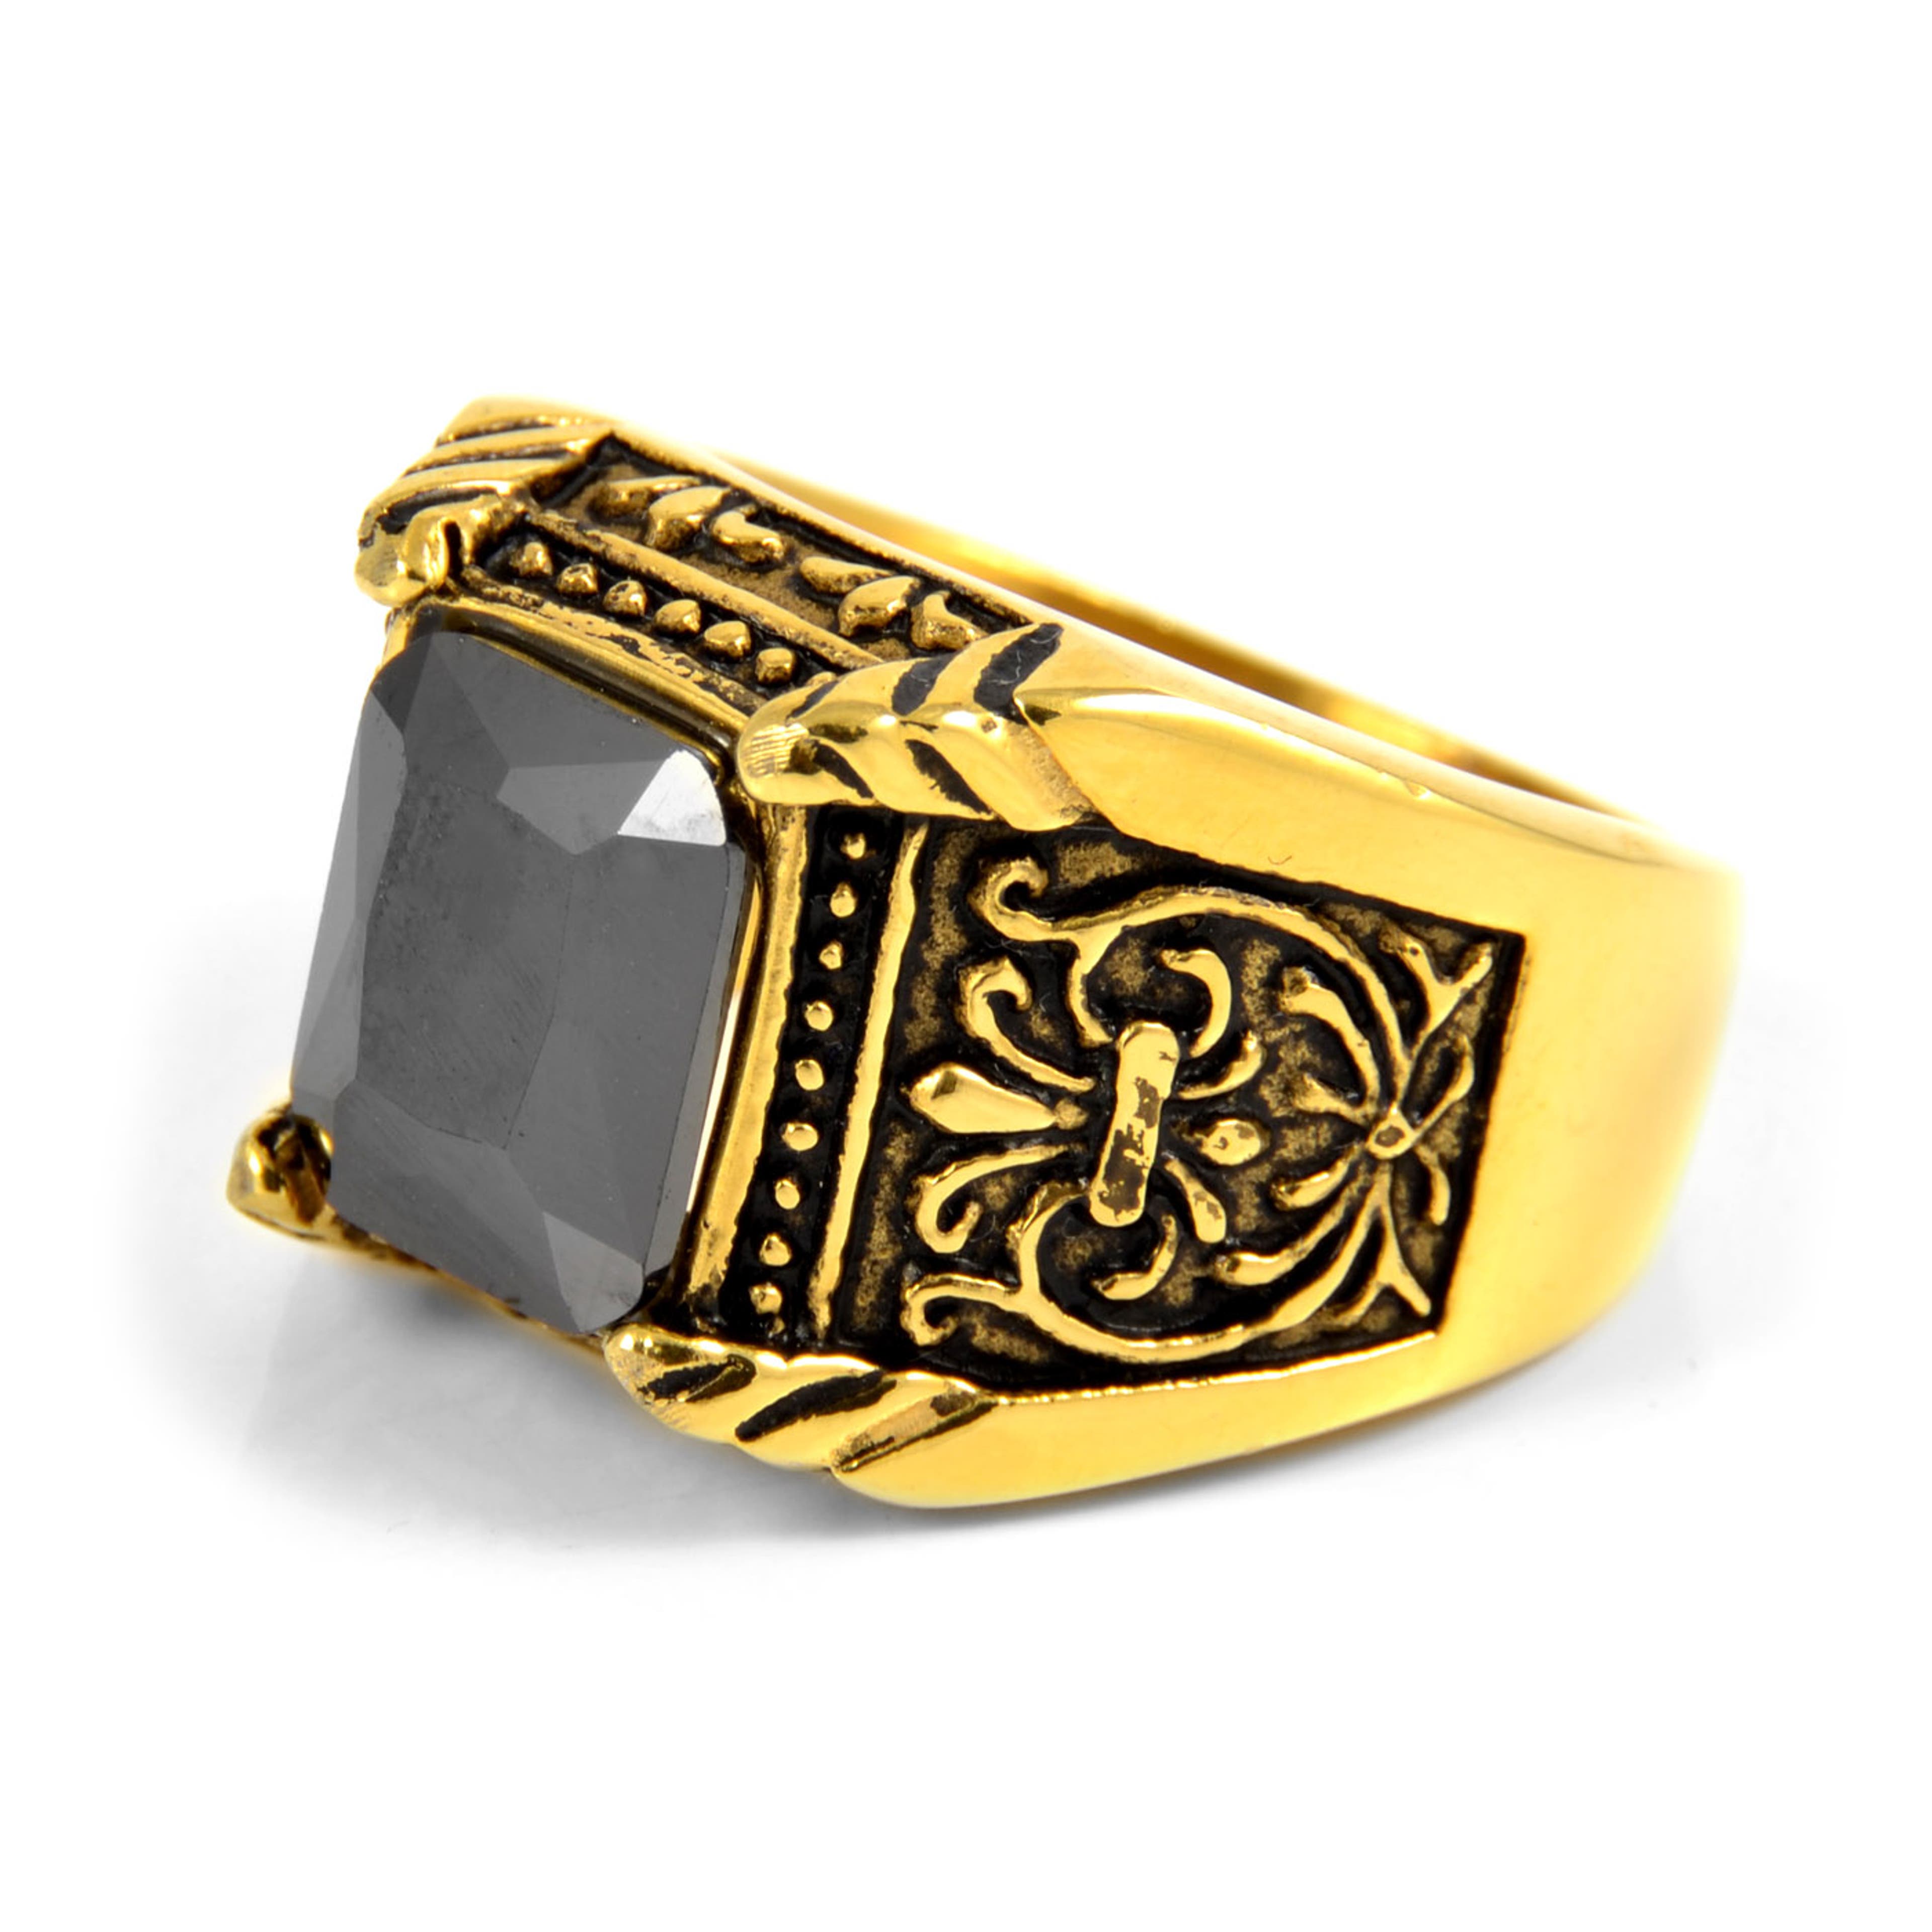 Златист стоманен пръстен в гръцки стил